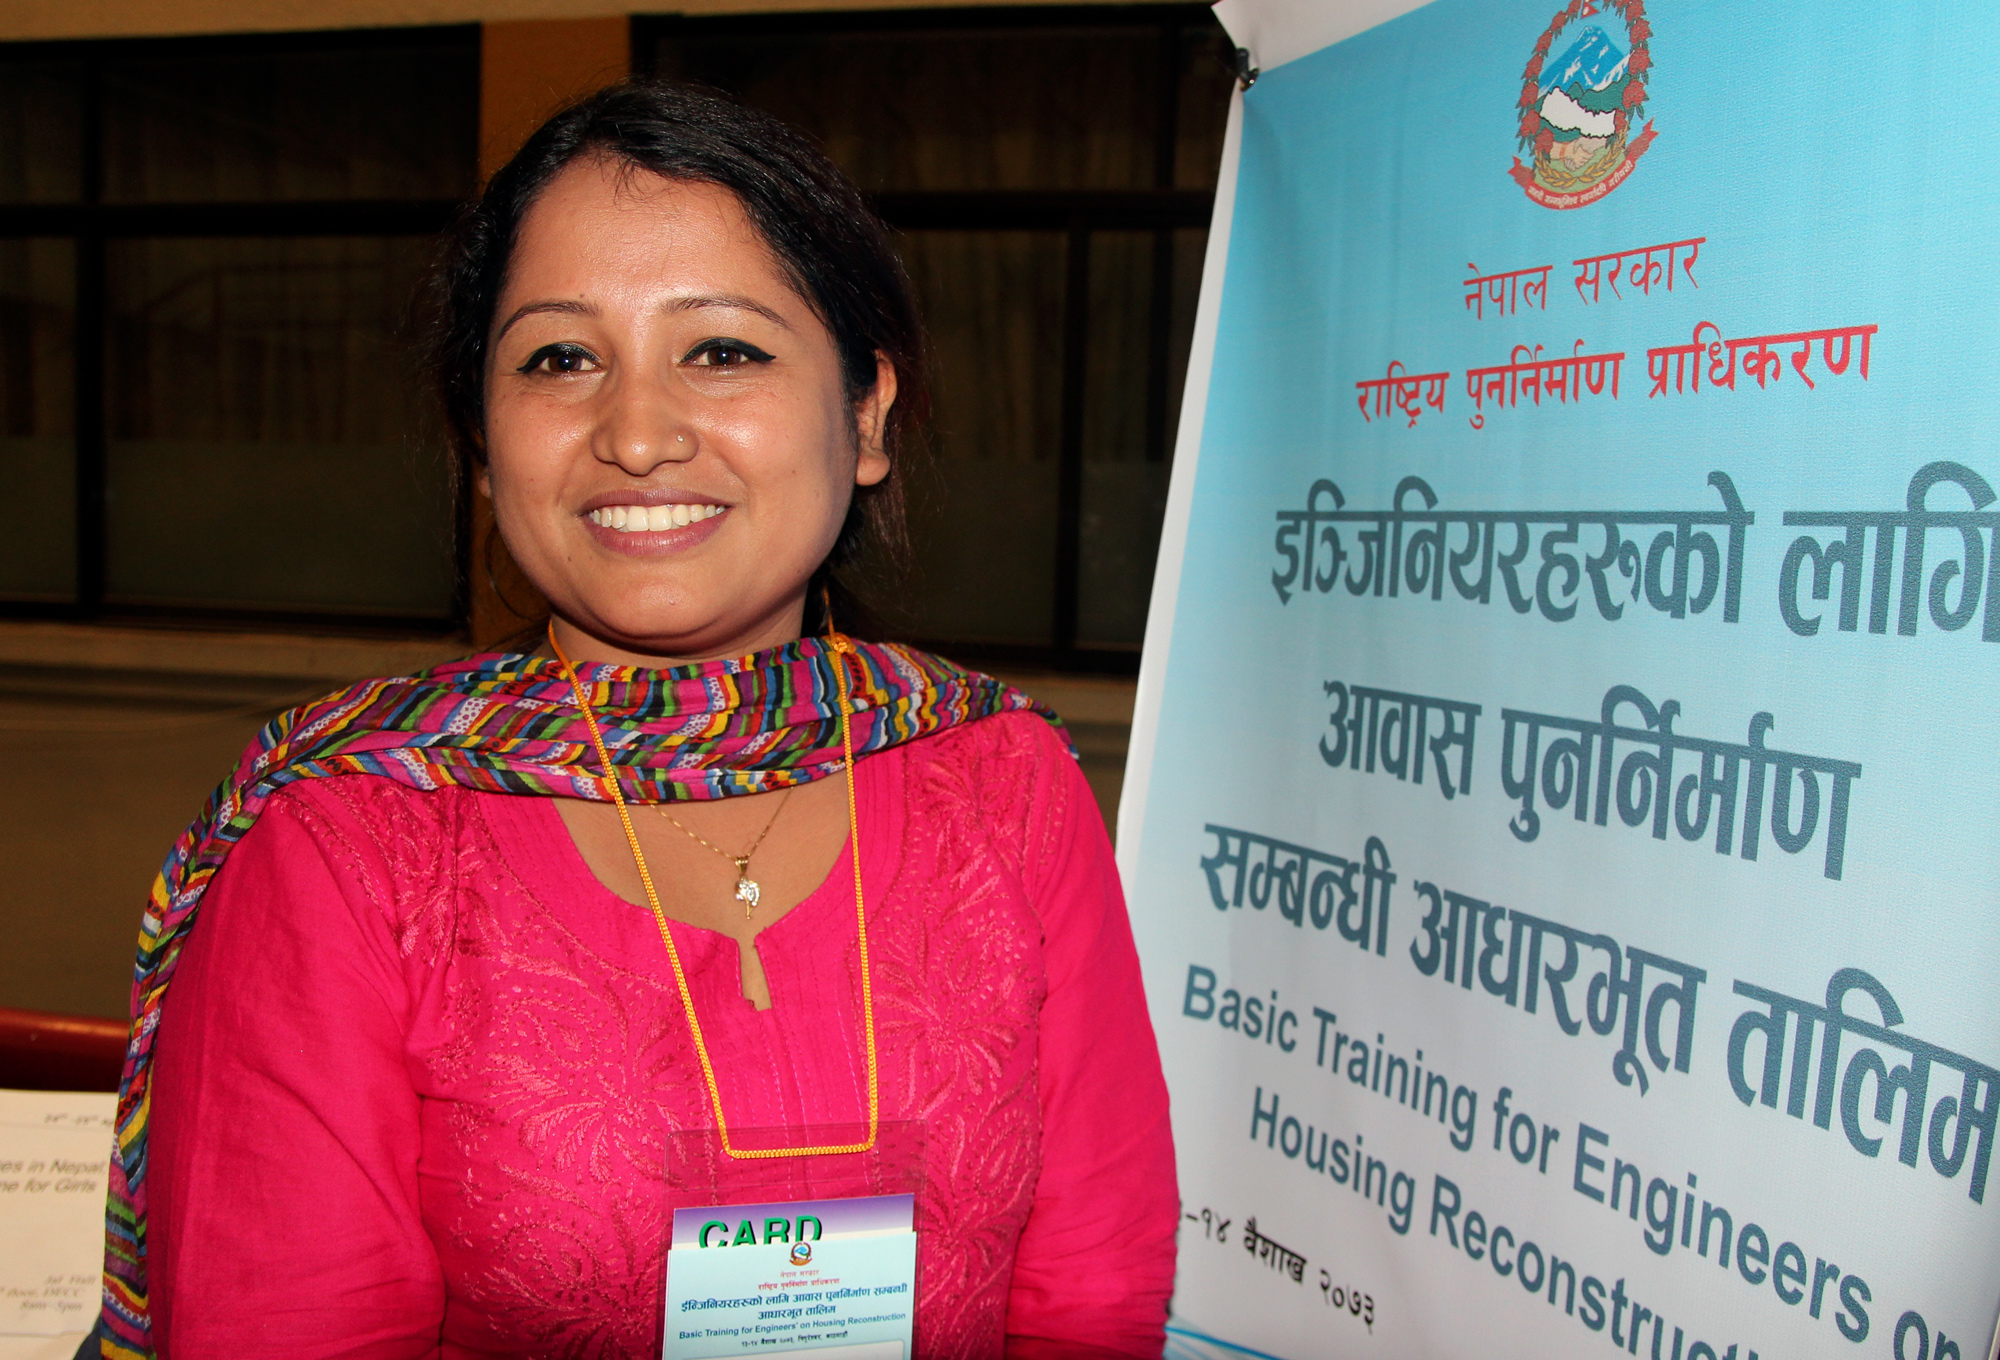 Engineer Manja Khadka, Kathmandu, Nepal